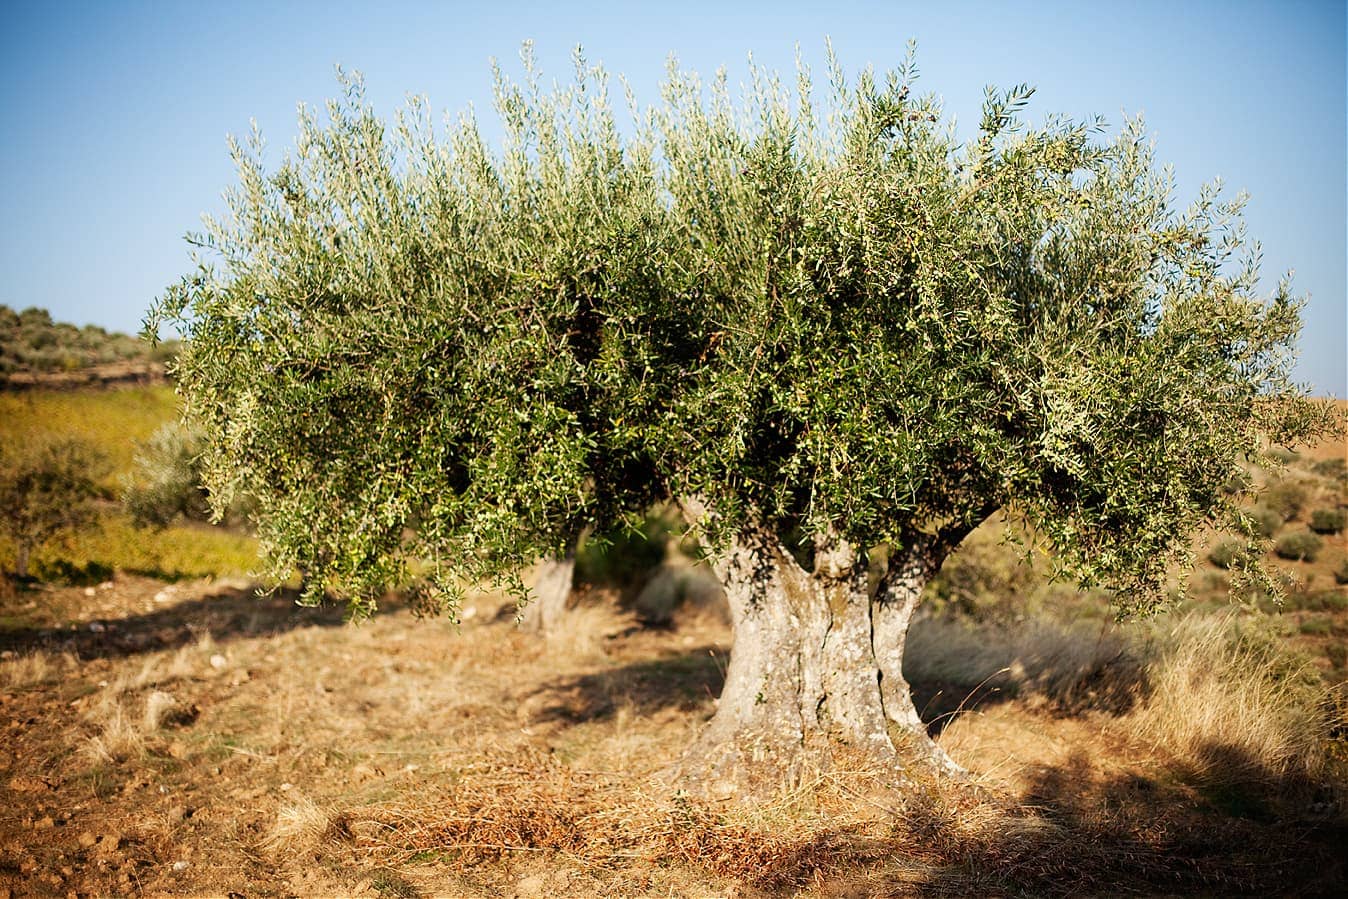 profiles-carm-прославляет-региональный-вкус-с-высококачественными-оливковыми-маслами-и-винами-оливковым-маслом-время